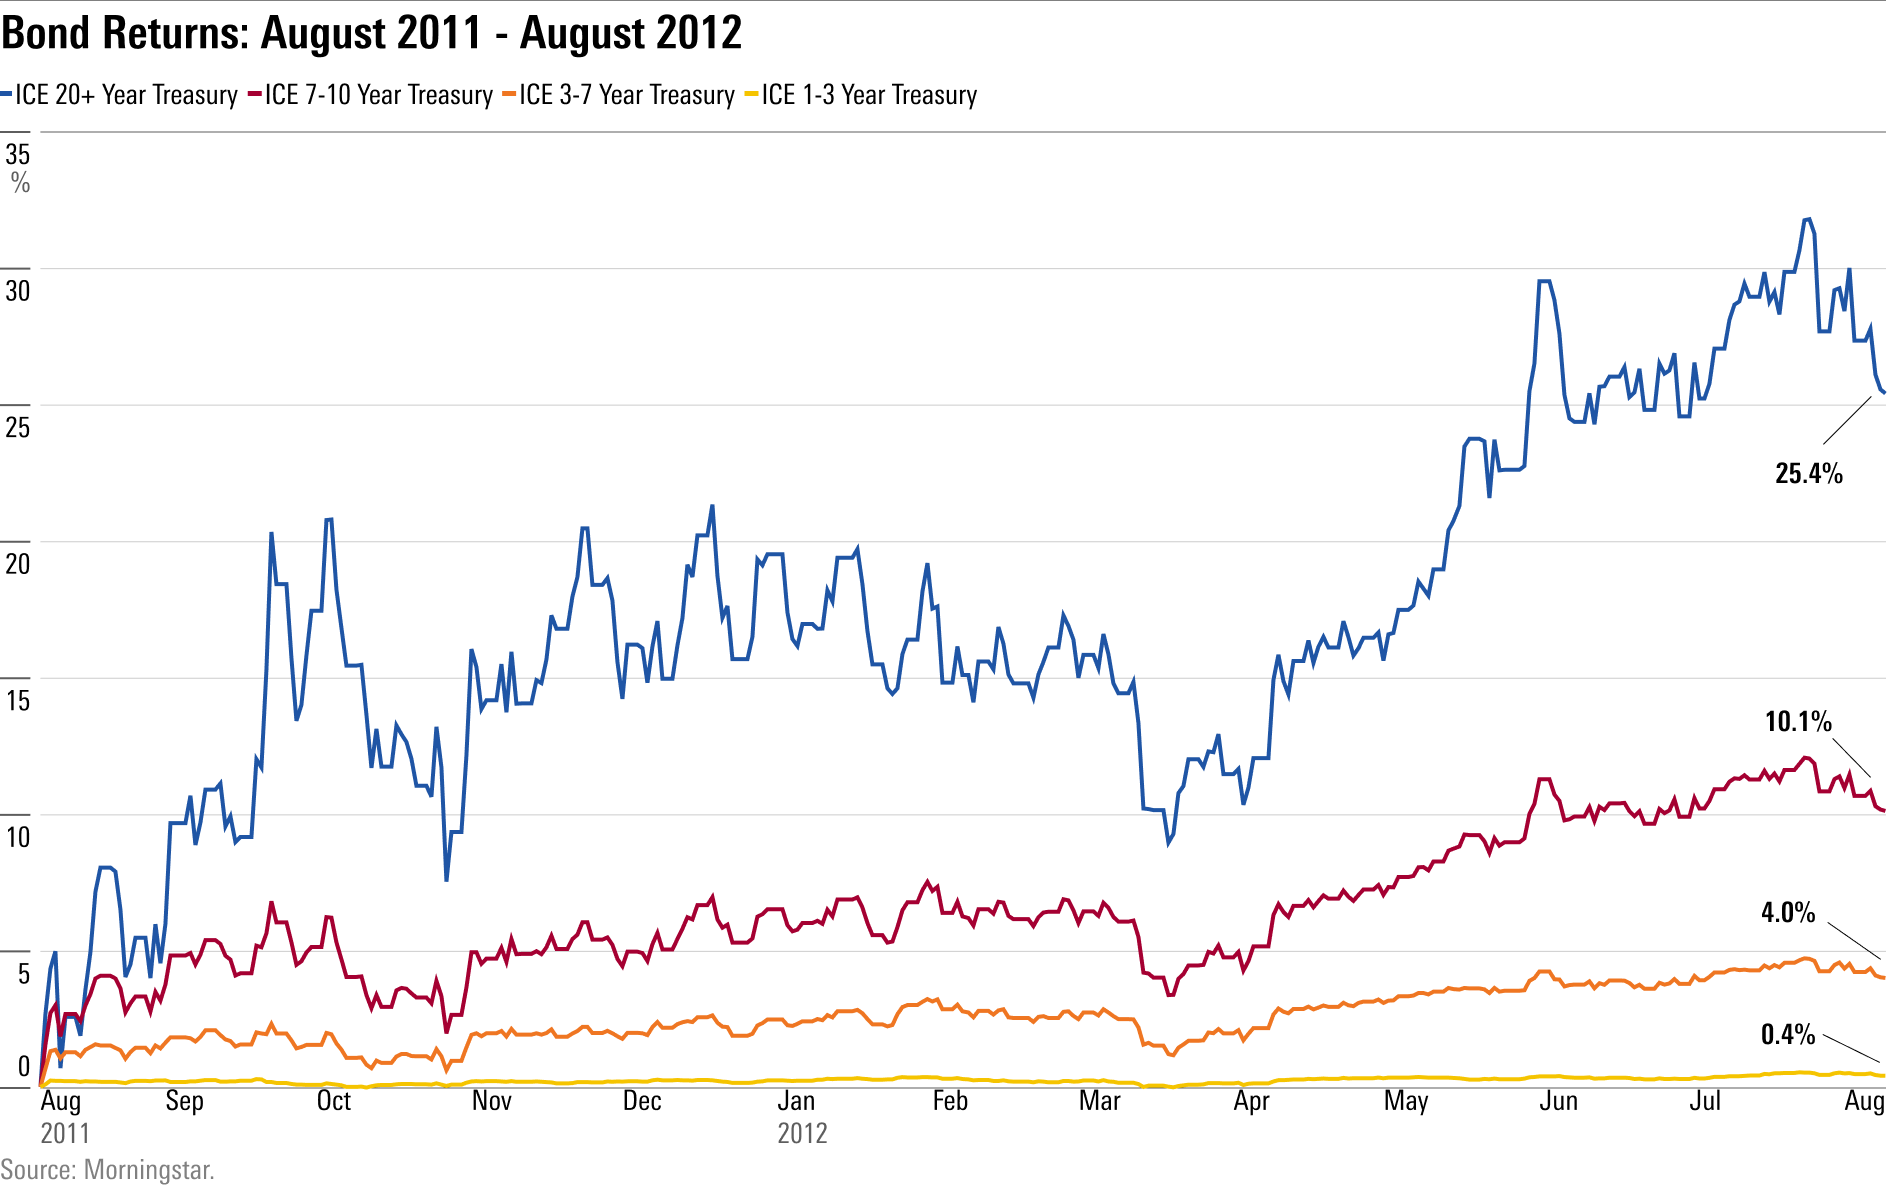 rendimientos de varios índices de bonos durante el año posterior a la rebaja de la calificación crediticia de Estados Unidos en agosto de 2011